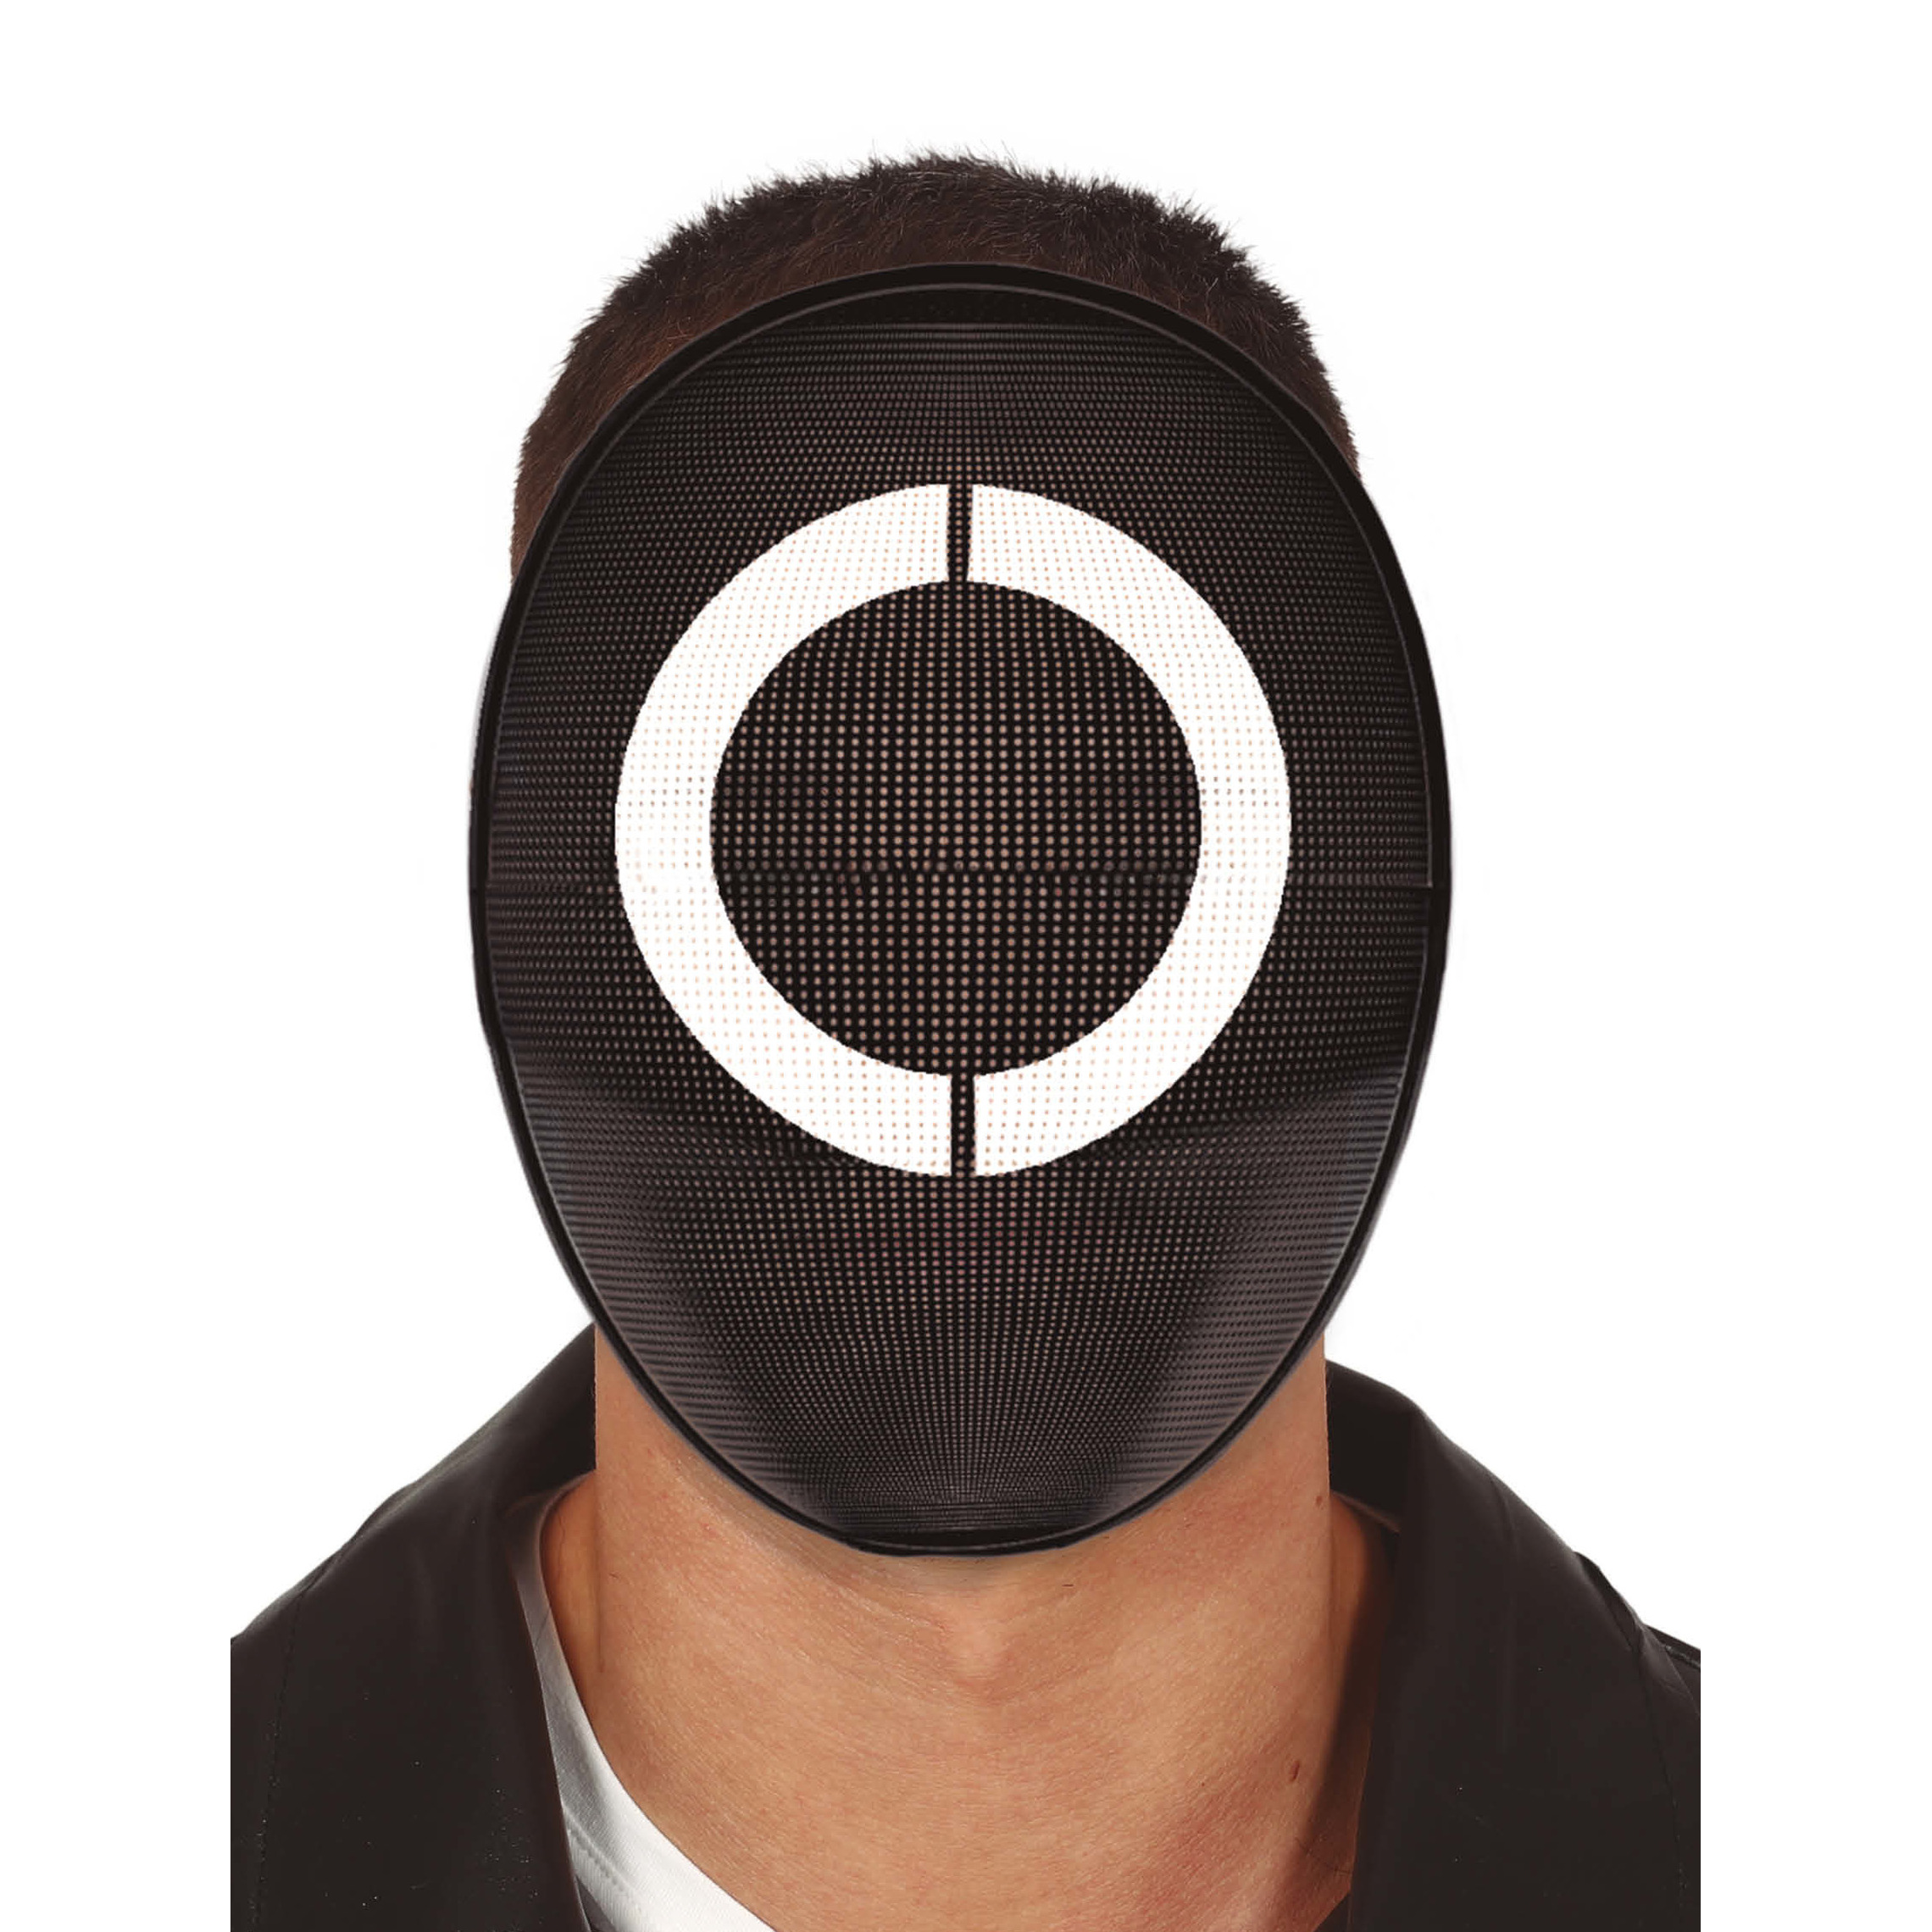 Afbeelding van Verkleed masker game cirkel bekend van tv serie